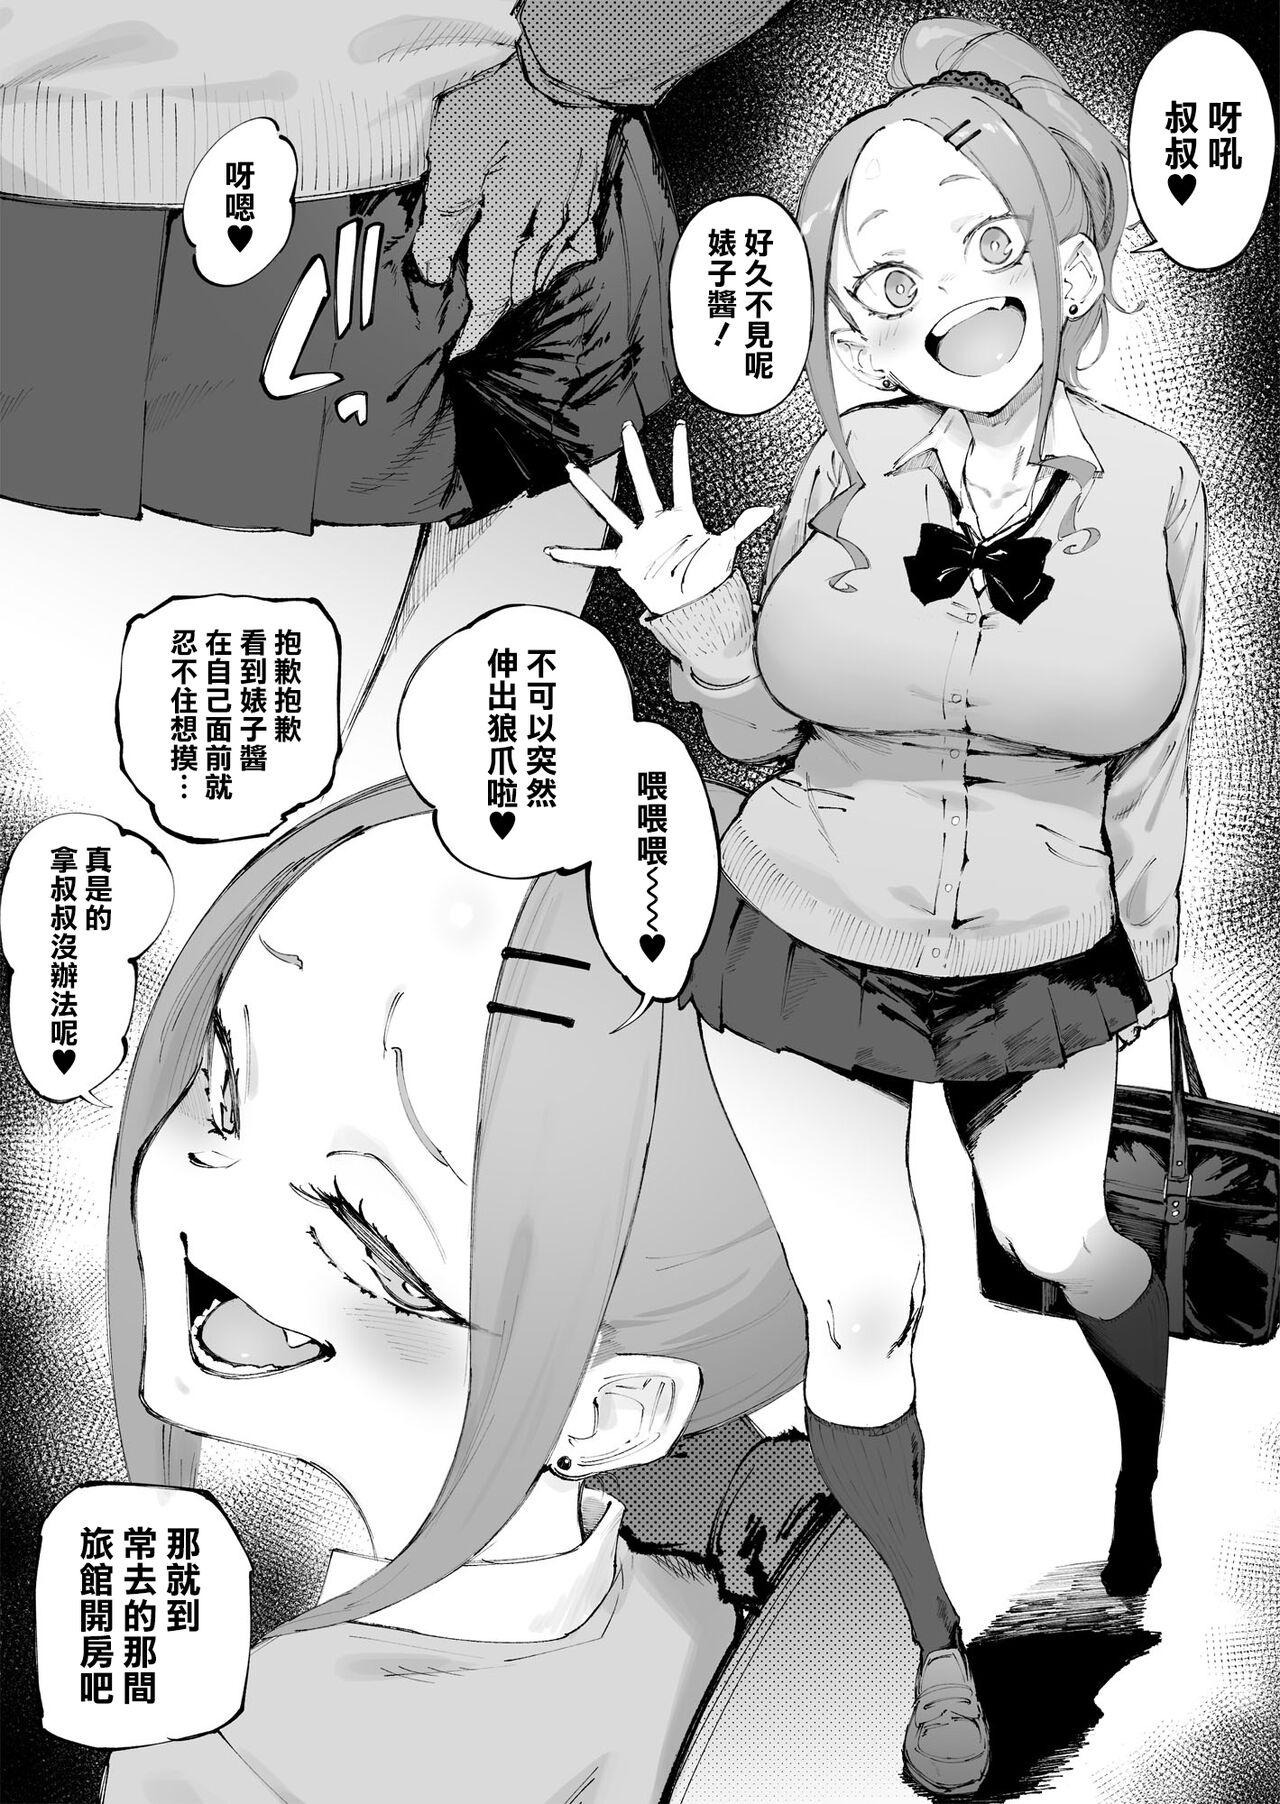 She Uchi no Ko Manga Sono | 辣妹短篇合集 China - Page 6